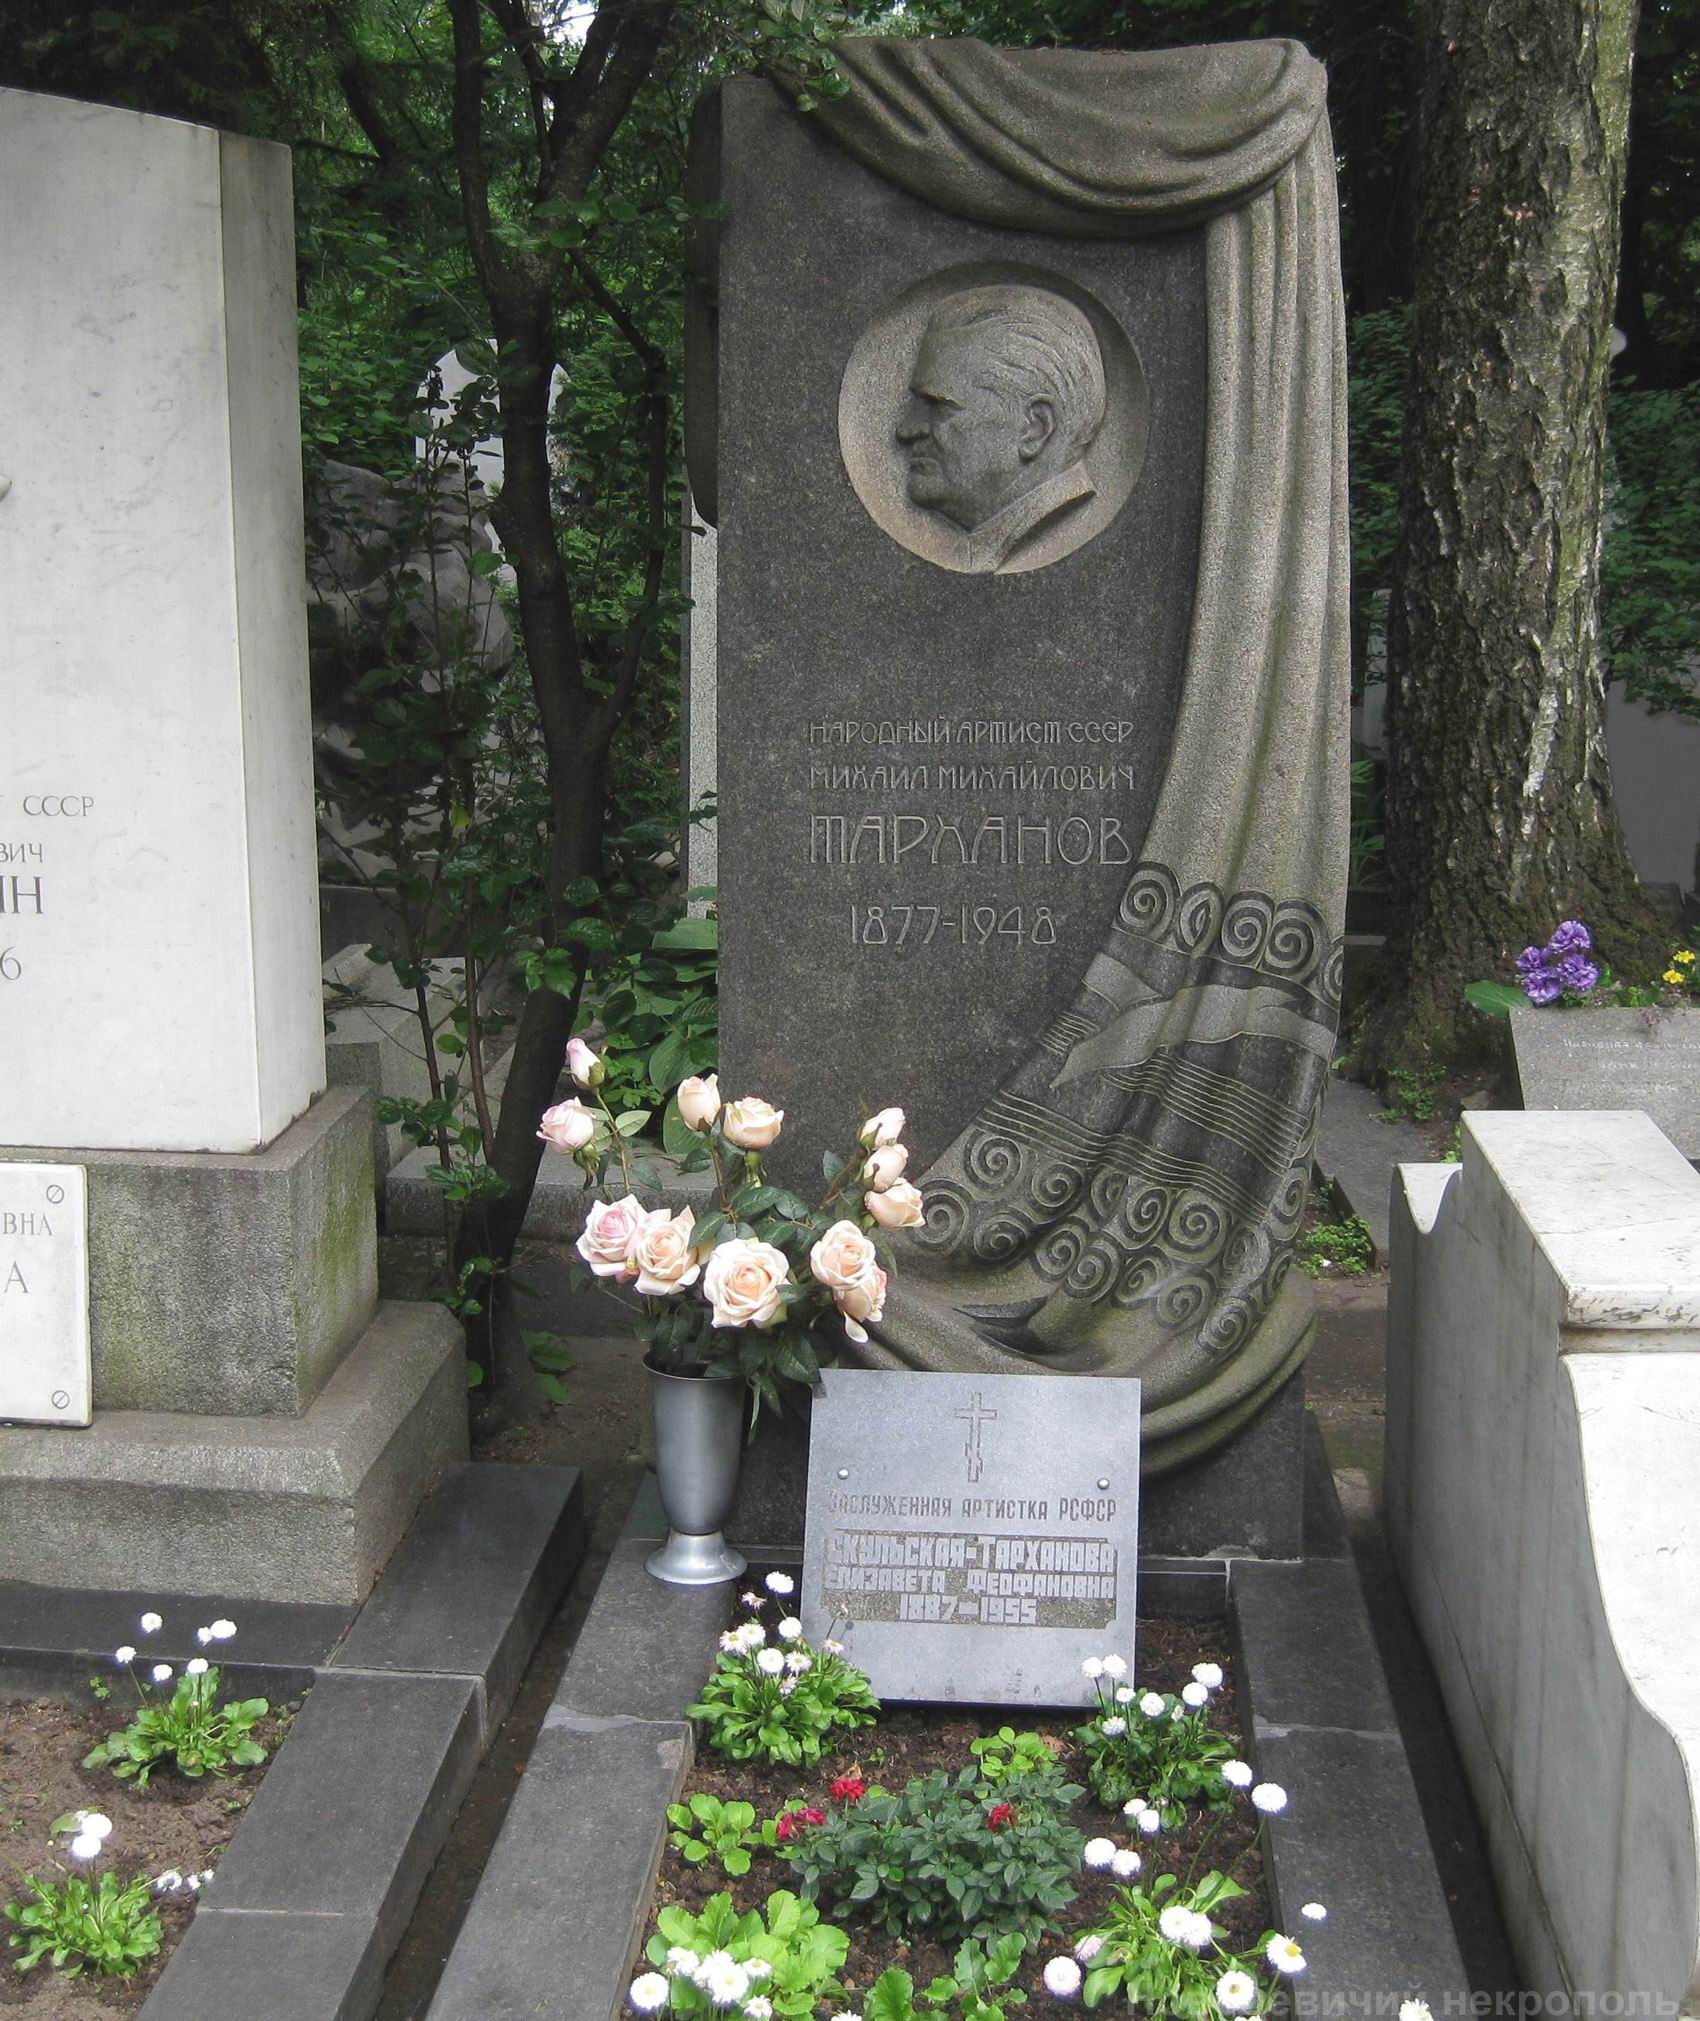 Памятник на могиле Тарханова М.М. (1877-1948), ск. М.Оленин, арх. В.Калинин, на Новодевичьем кладбище (2-15-21).